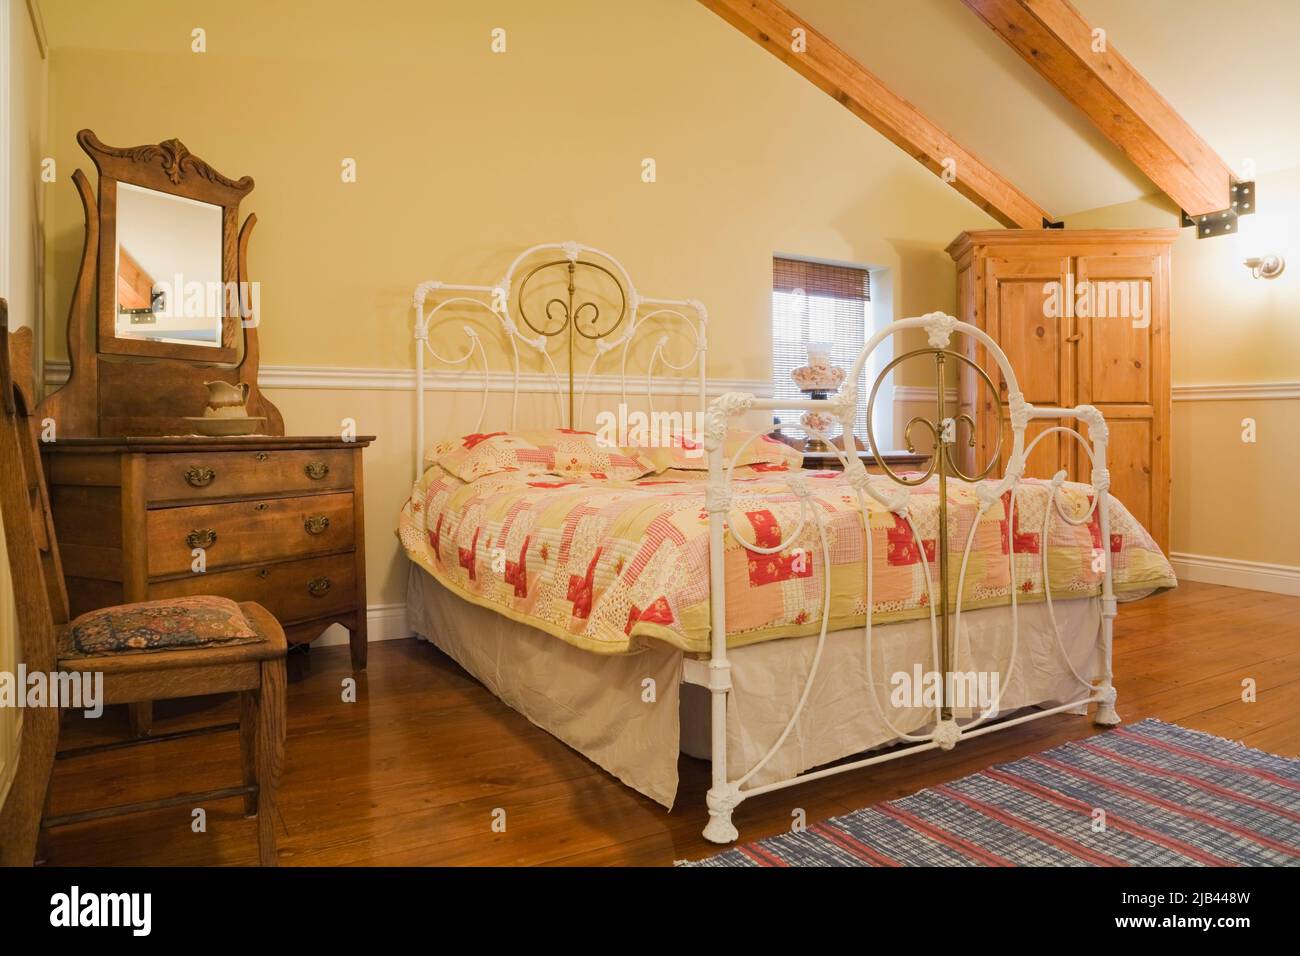 Antico letto queen size con testata e pedane in ottone e ferro battuto, arredamento in camera da letto all'interno della vecchia casa in mattoni Canadiana stile cottage 1870. Foto Stock